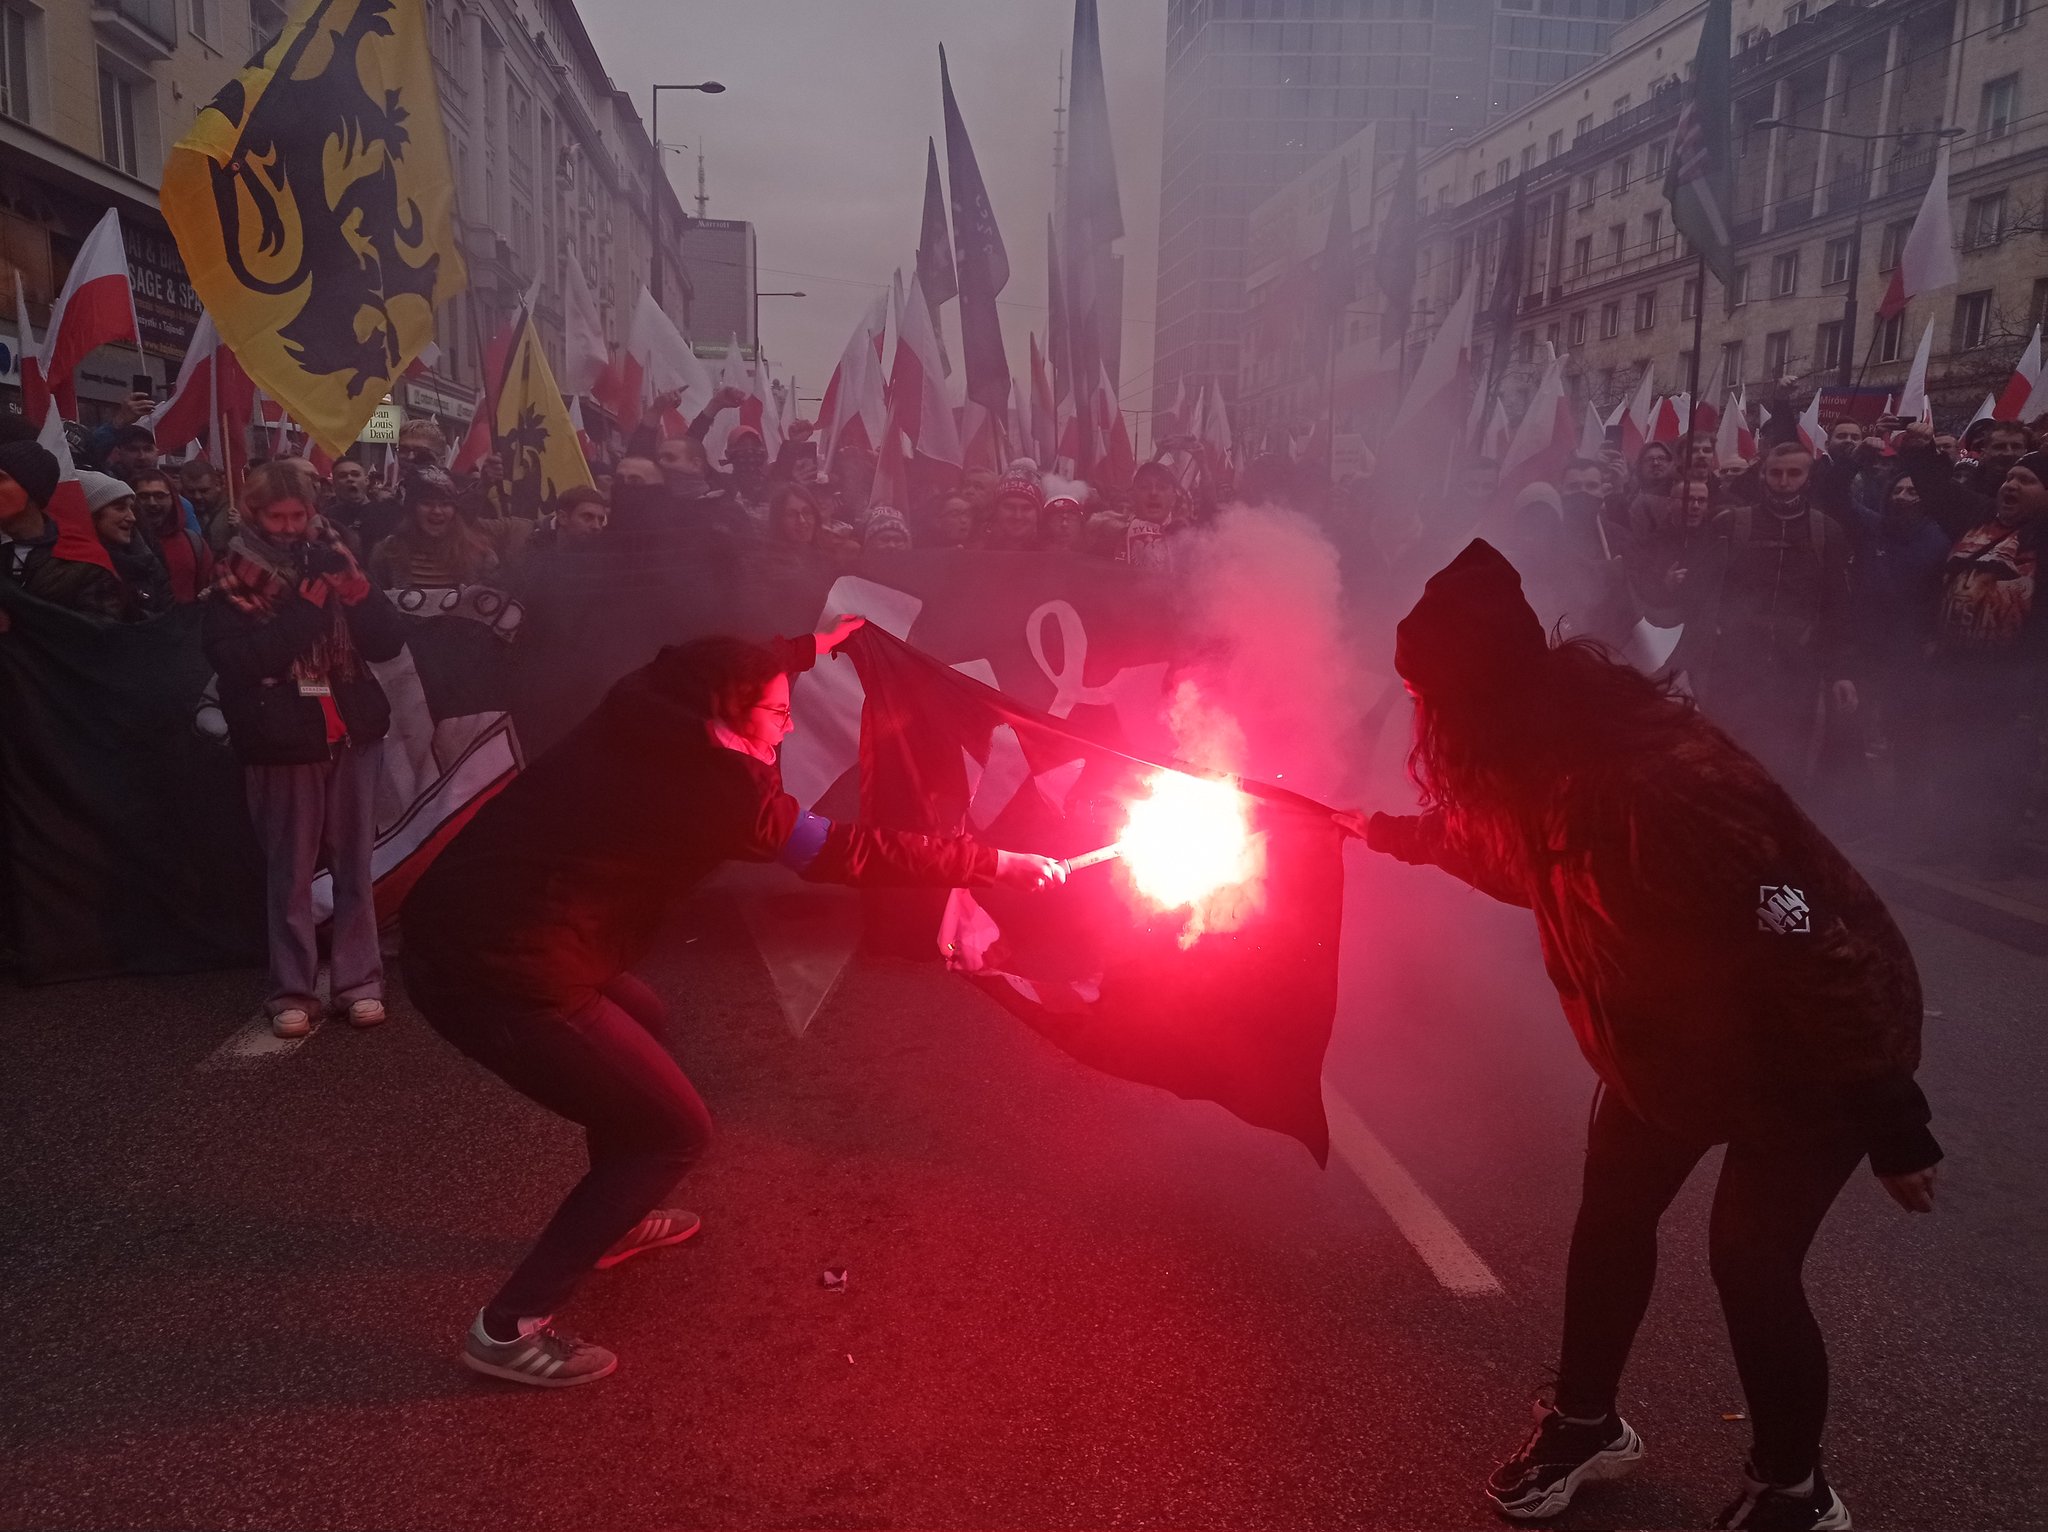 polskaracja.pl: Incydenty na Marszu Niepodległości